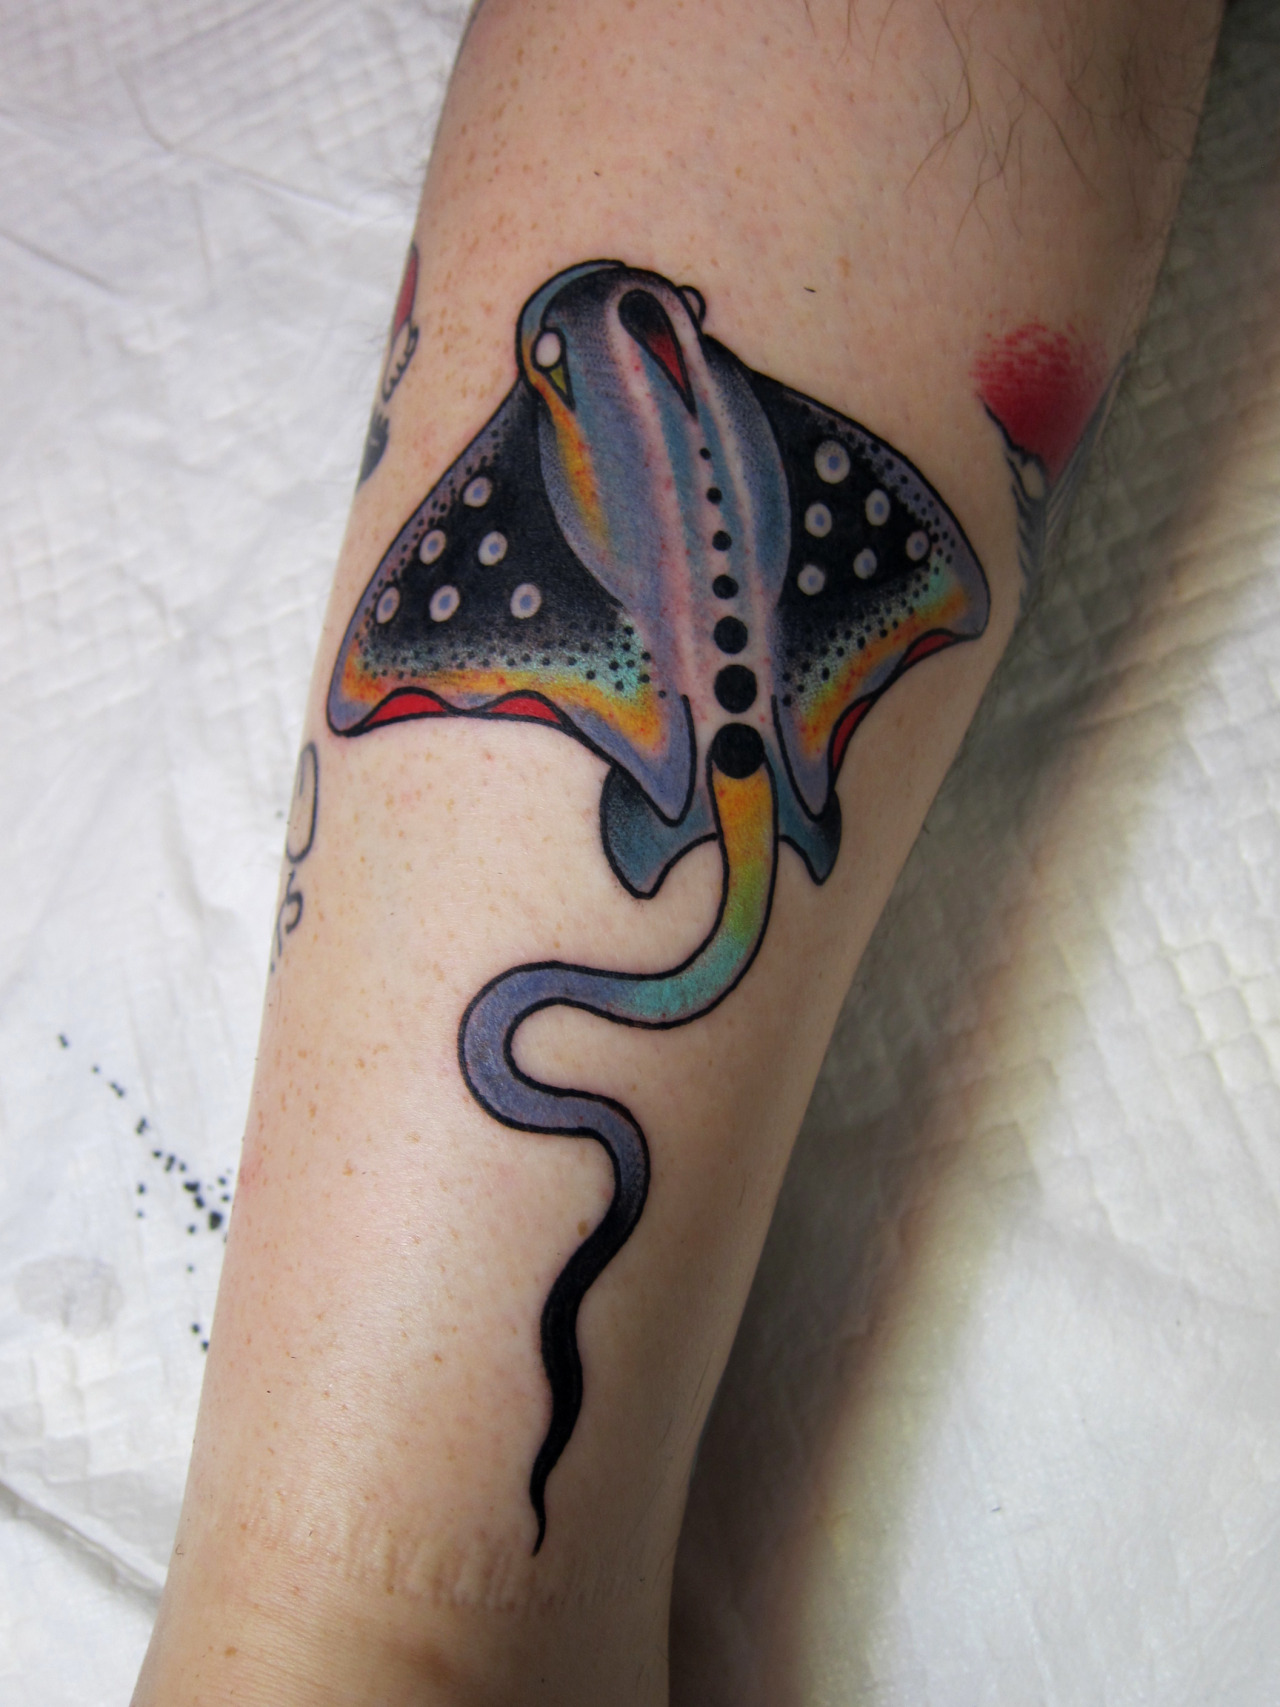 Tattoo uploaded by Patricio Nardi • Stingray tattoo • Tattoodo